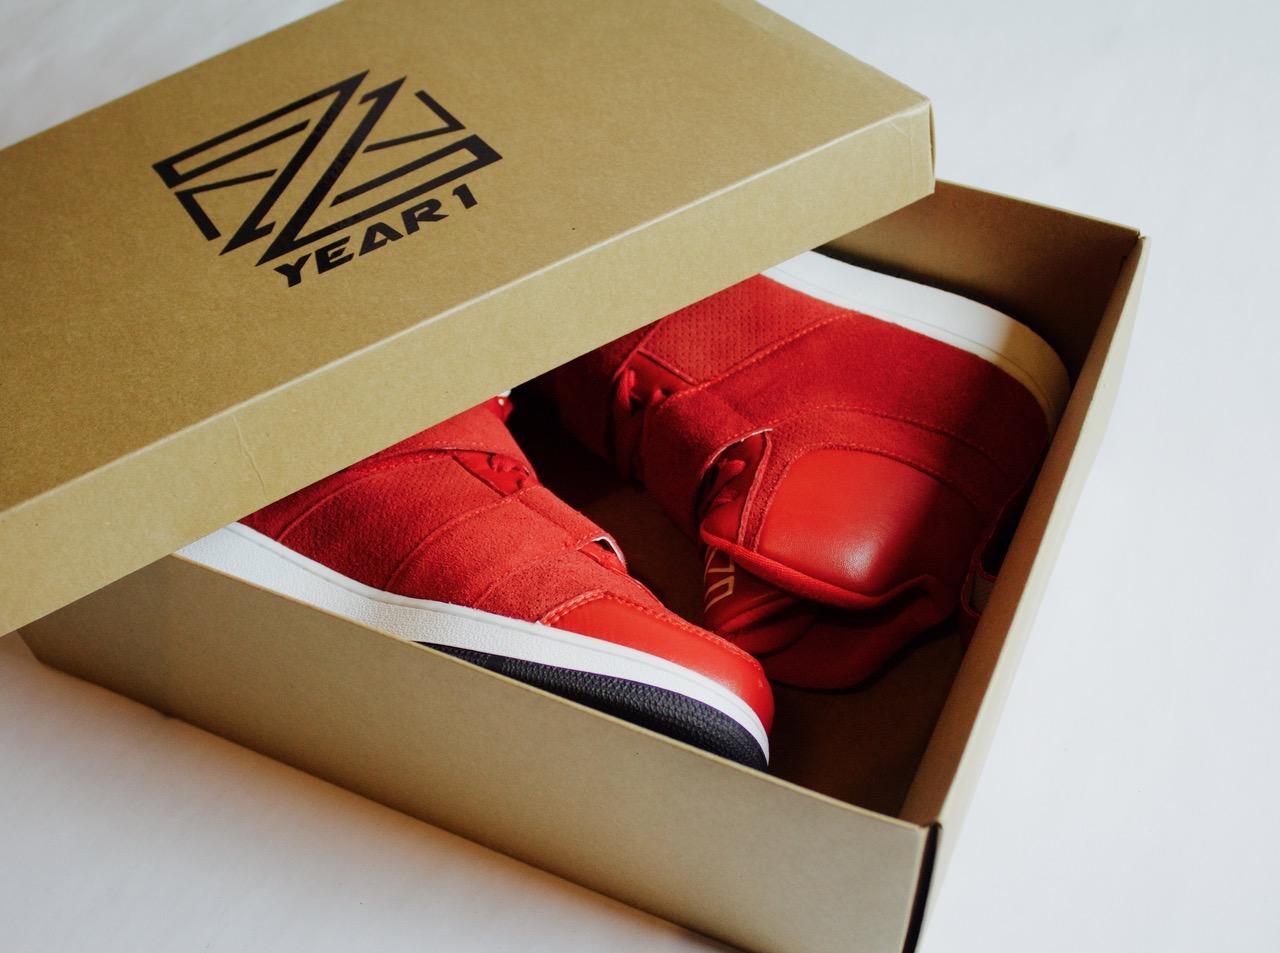 zn footwear prototype 1 blood orange